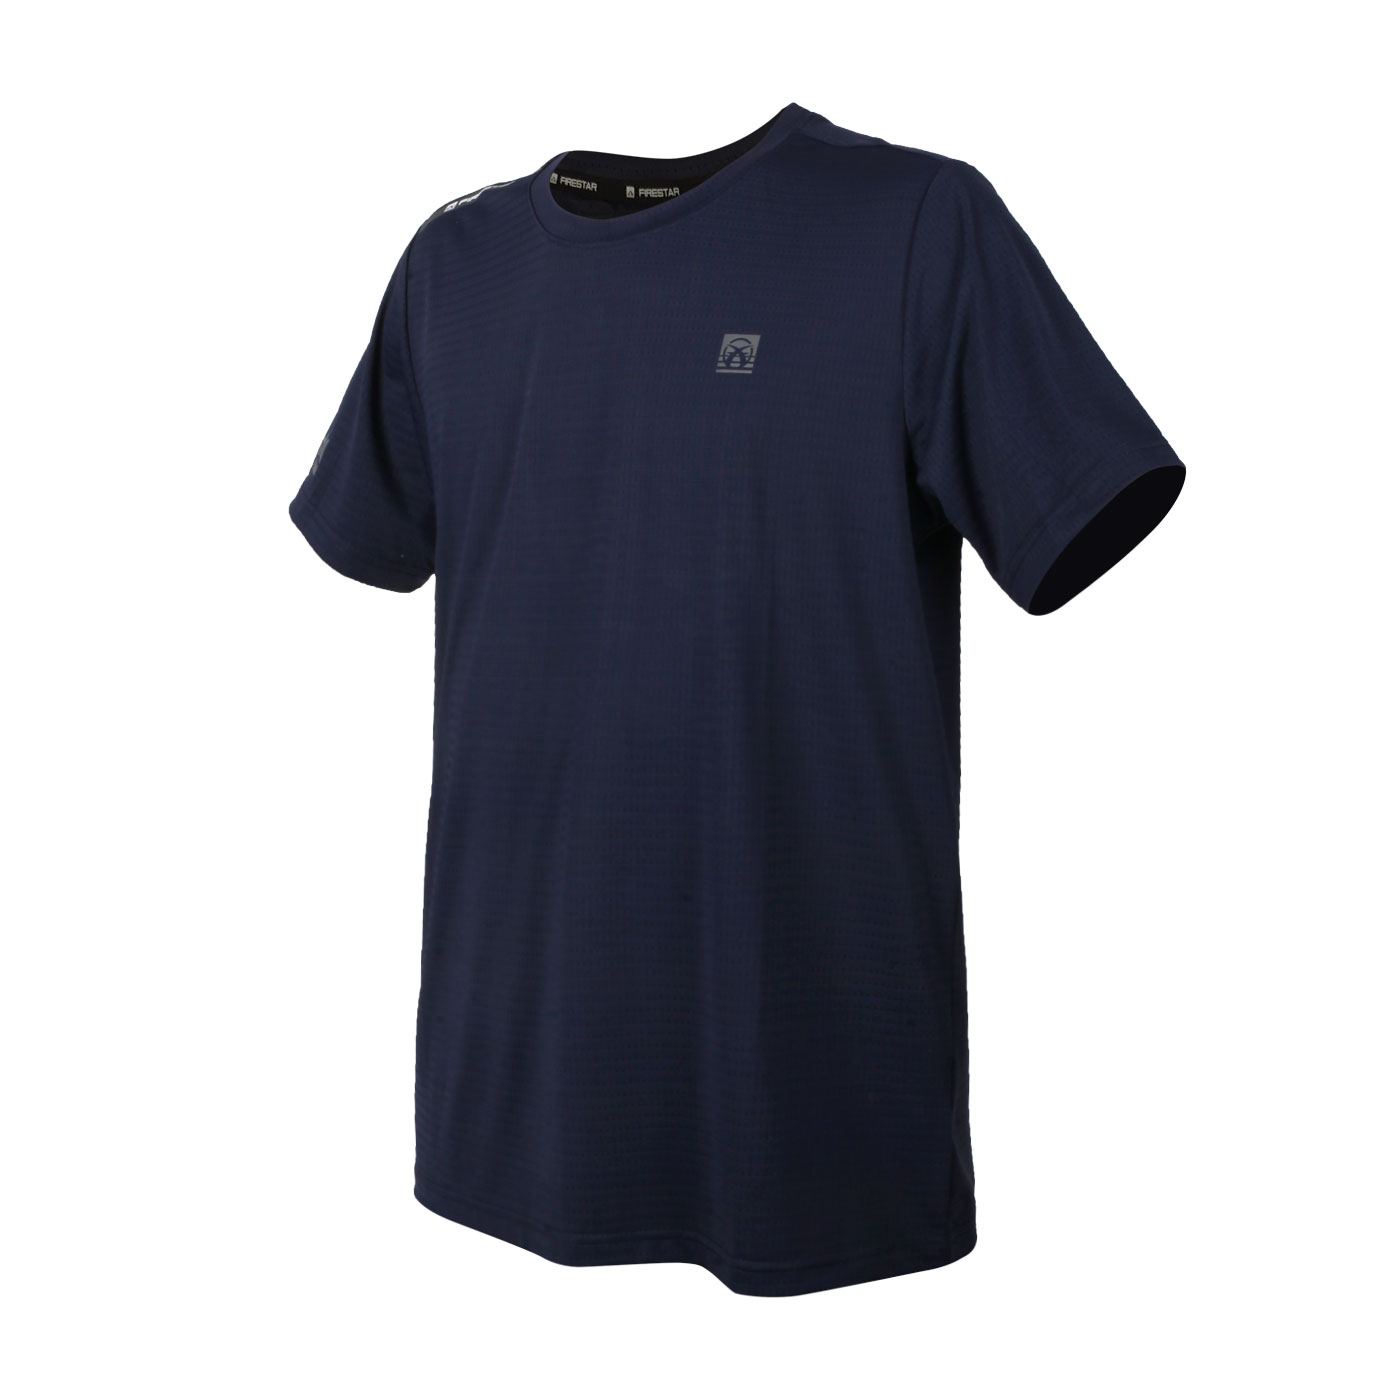 FIRESTAR 男款彈性圓領短袖T恤 D2033-93